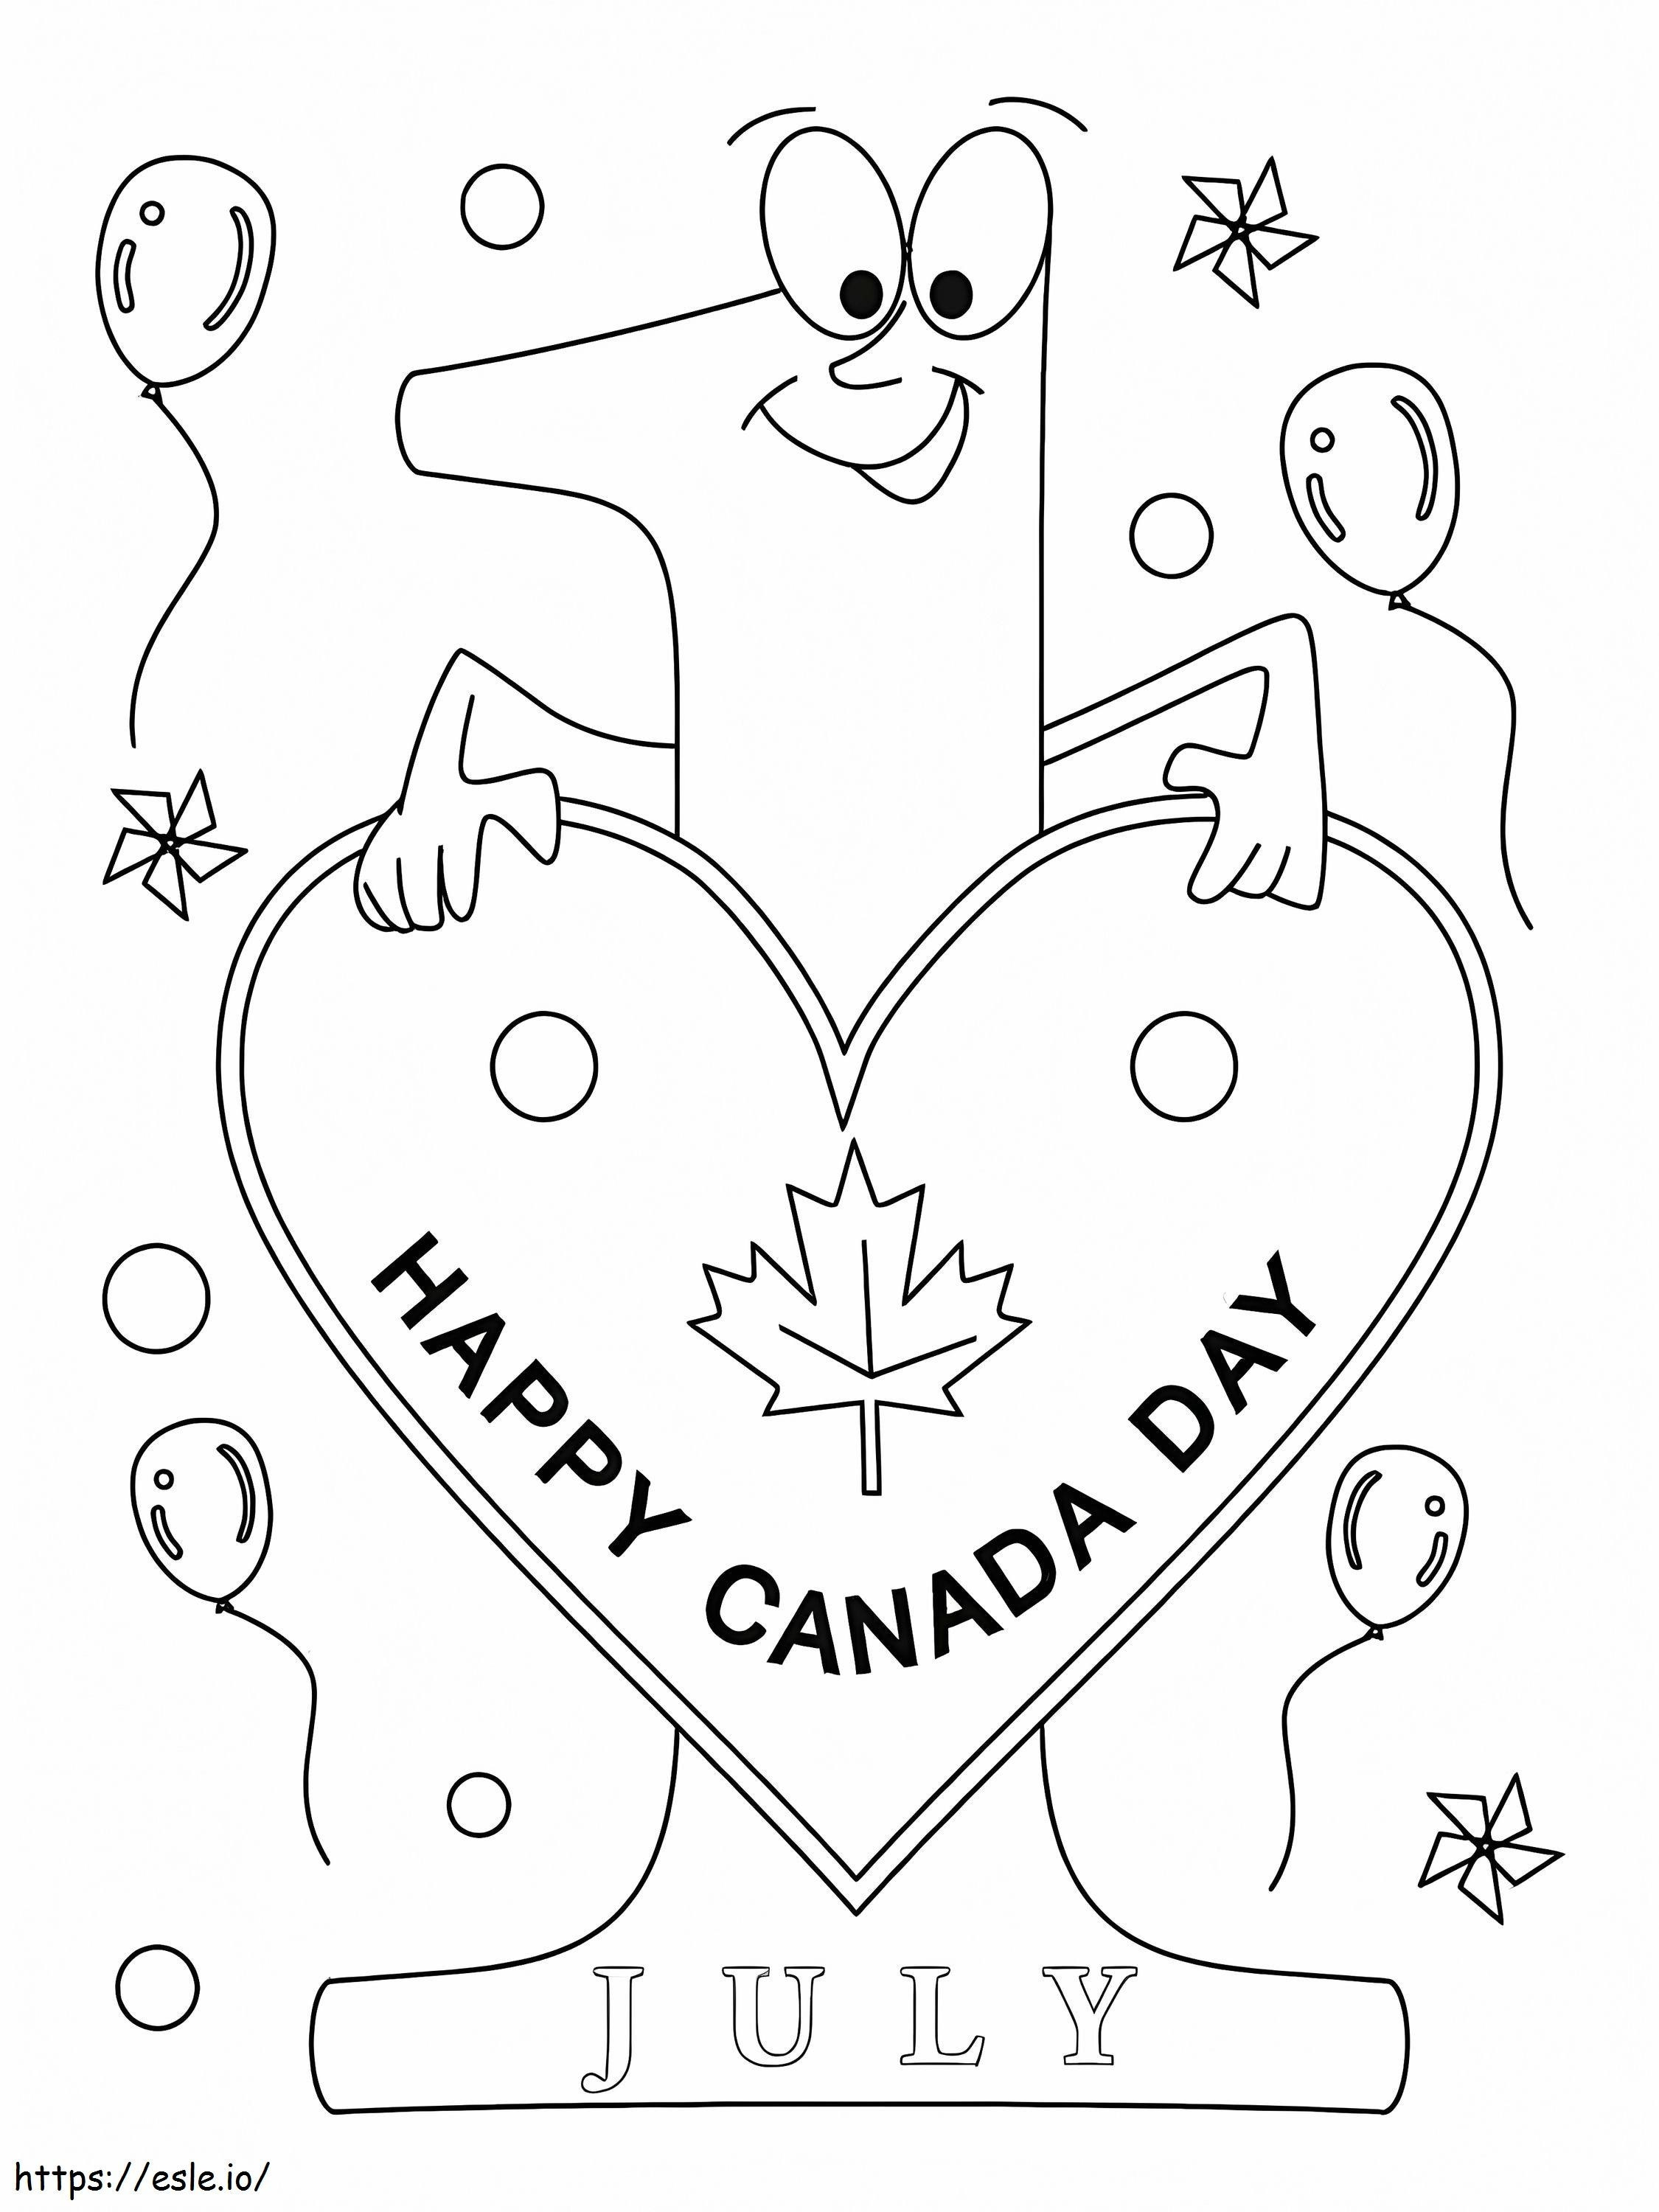 Feliz día 9 de Canadá para colorear